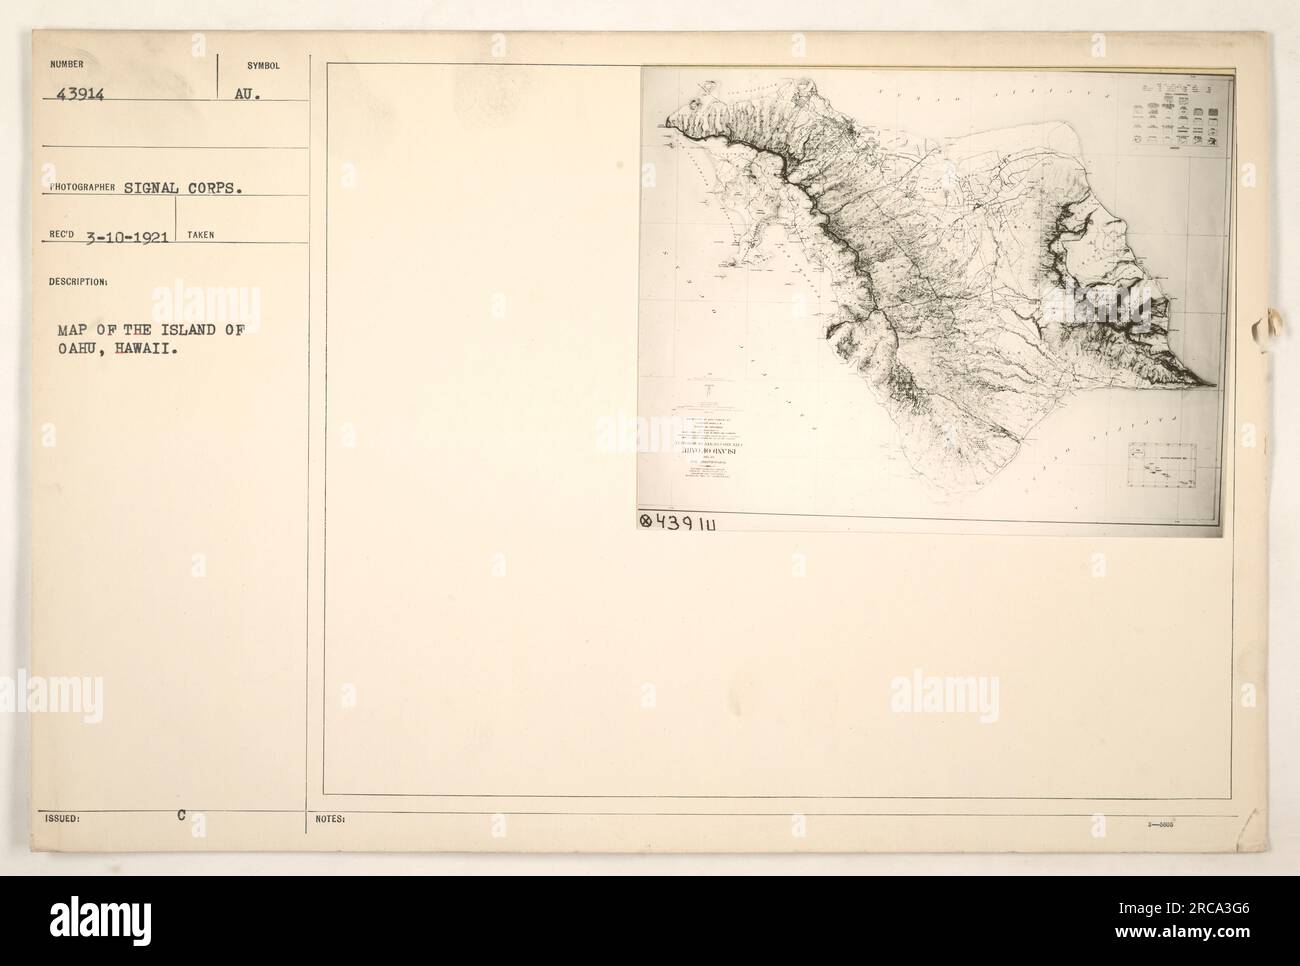 Photographie d'une carte de l'île d'Oahu, Hawaï, prise le 10 mars 1921 par le signal corps. La carte montre des détails, y compris l'emplacement de SuperD Merak et quelques notations de symboles. Cette image fait partie de la collection de photographies des activités militaires américaines pendant la première Guerre mondiale. Banque D'Images